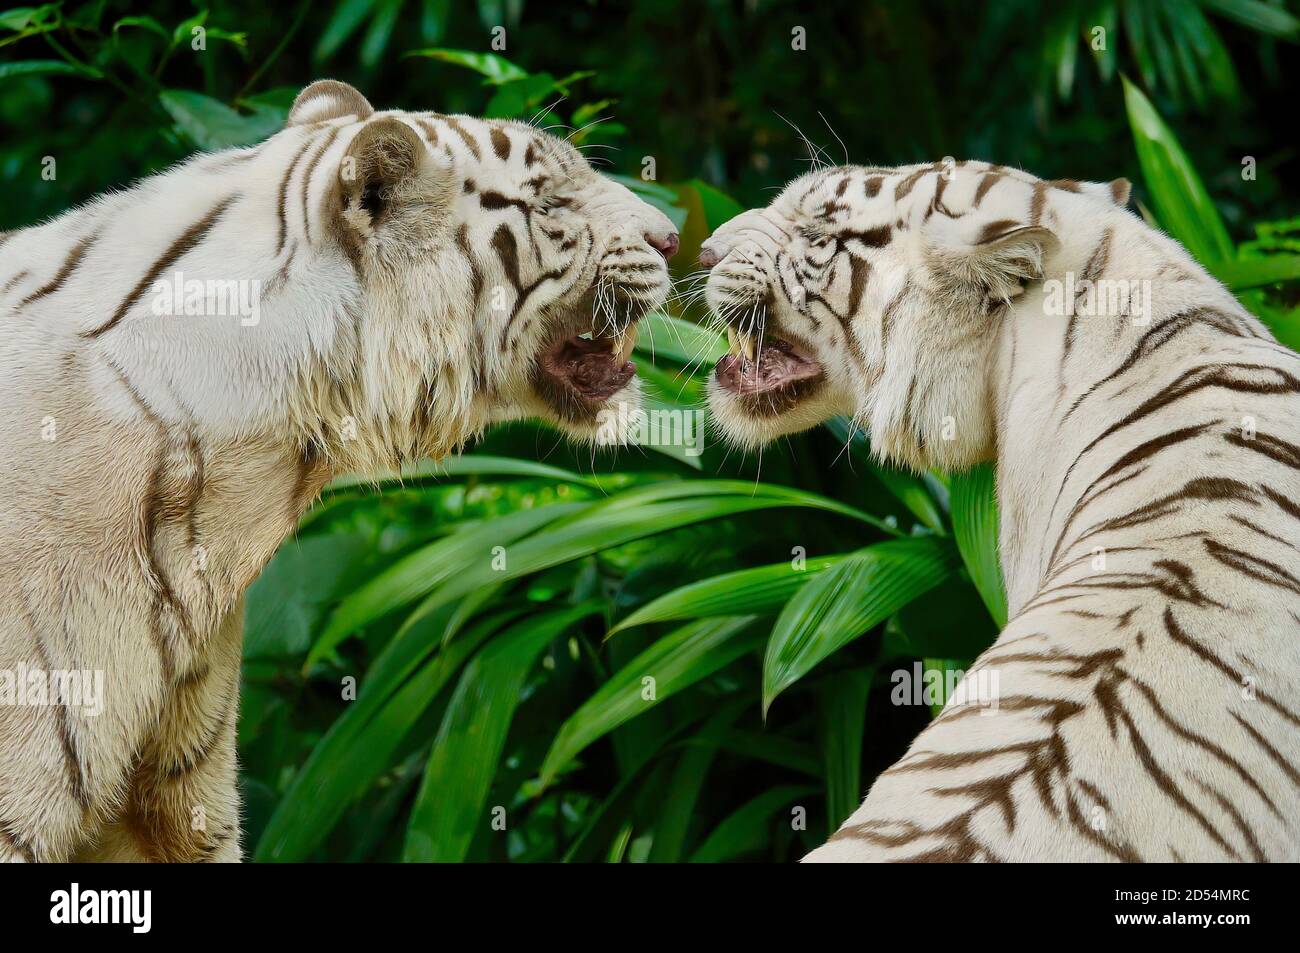 Nahaufnahme von zwei wunderschönen weißen Tigern, die von Angesicht zu Angesicht stehen, sich gegenseitig knurren und knurren, in einer üppigen grünen Dschungelumgebung. Stockfoto